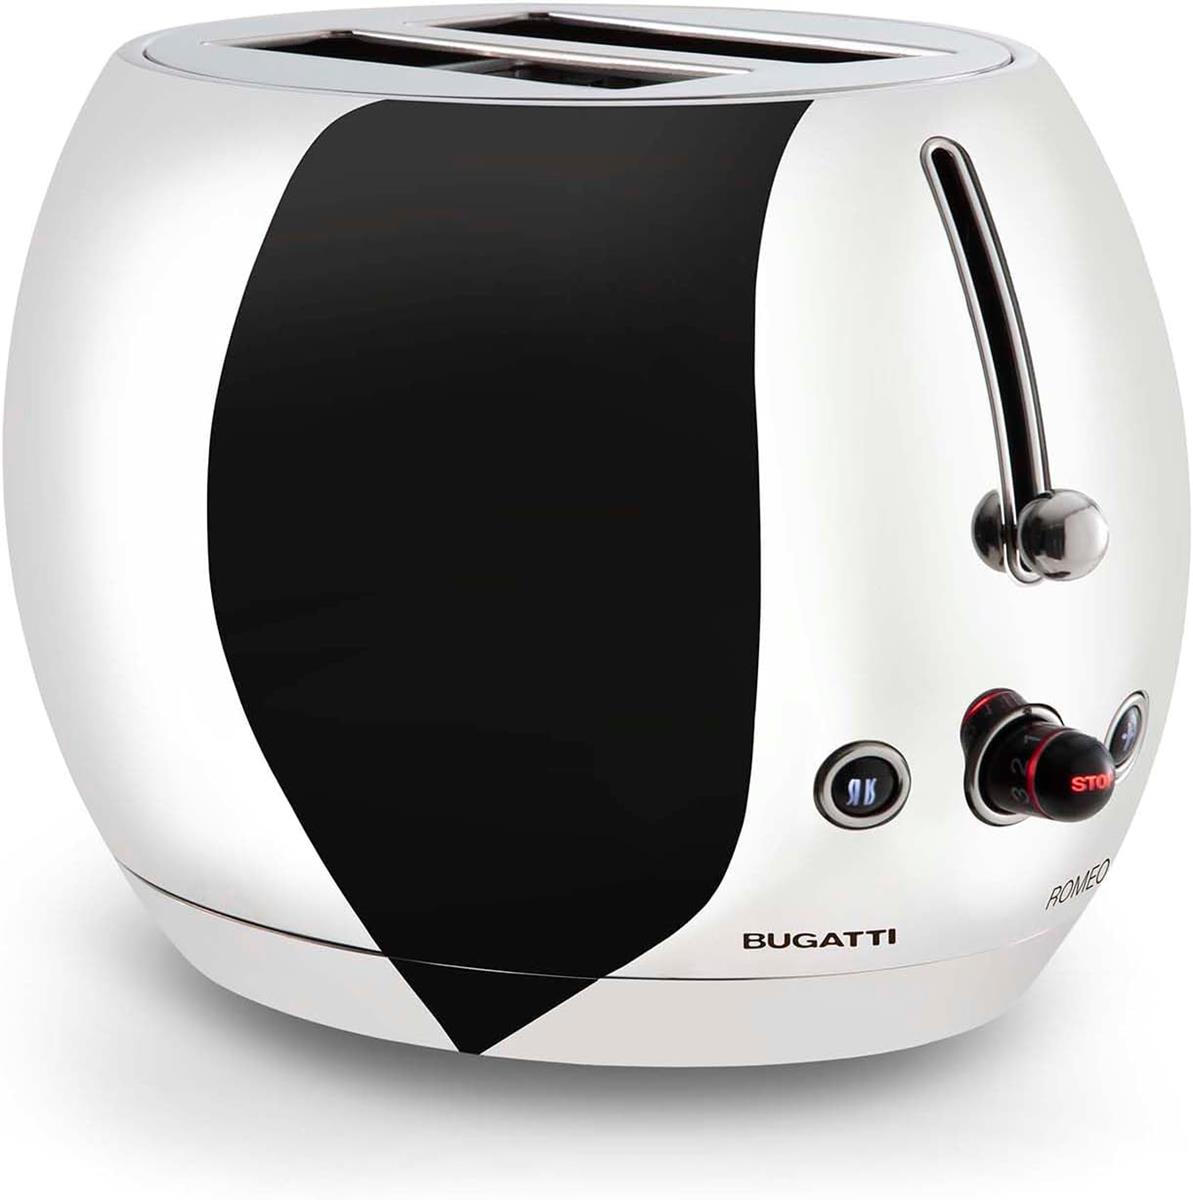 BUGATTI-Romeo-Toaster, 7 níveis de torrar, 4 funções-Pinças não incluídas-870-1035W-Aço